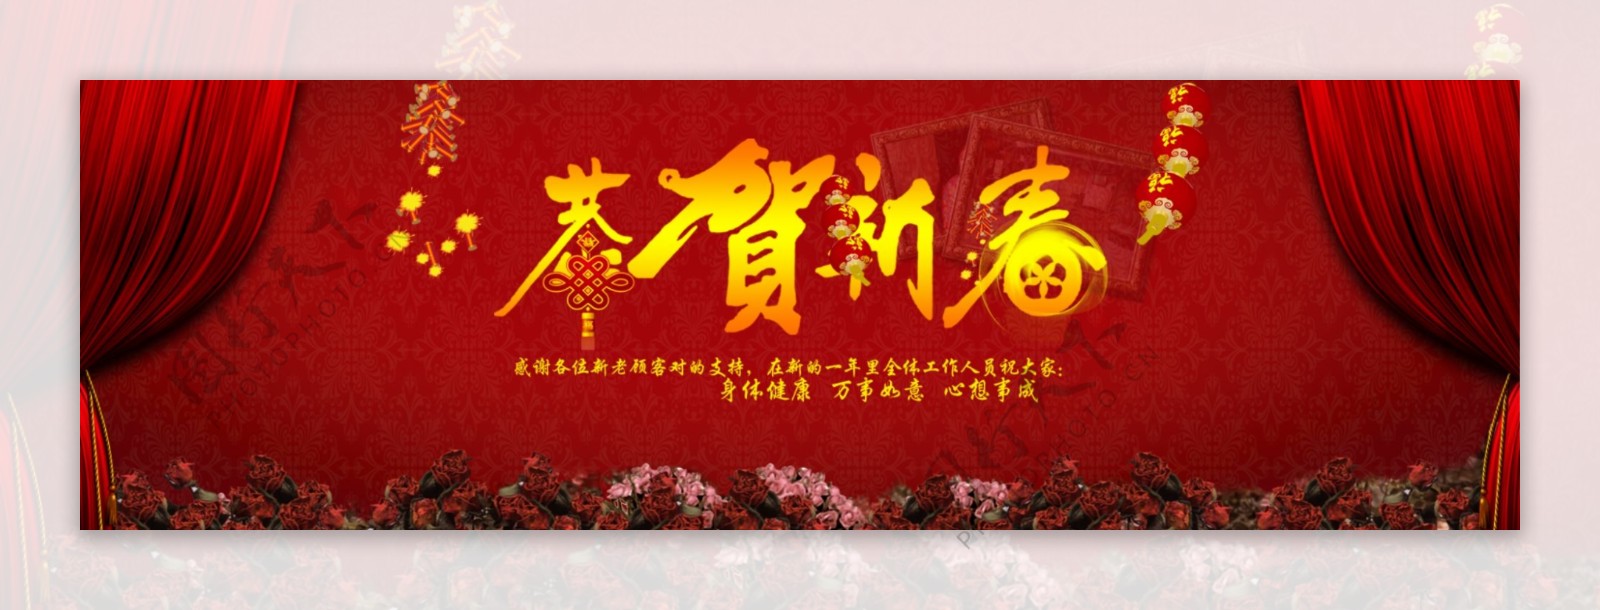 恭贺新春喜庆海报背景模板